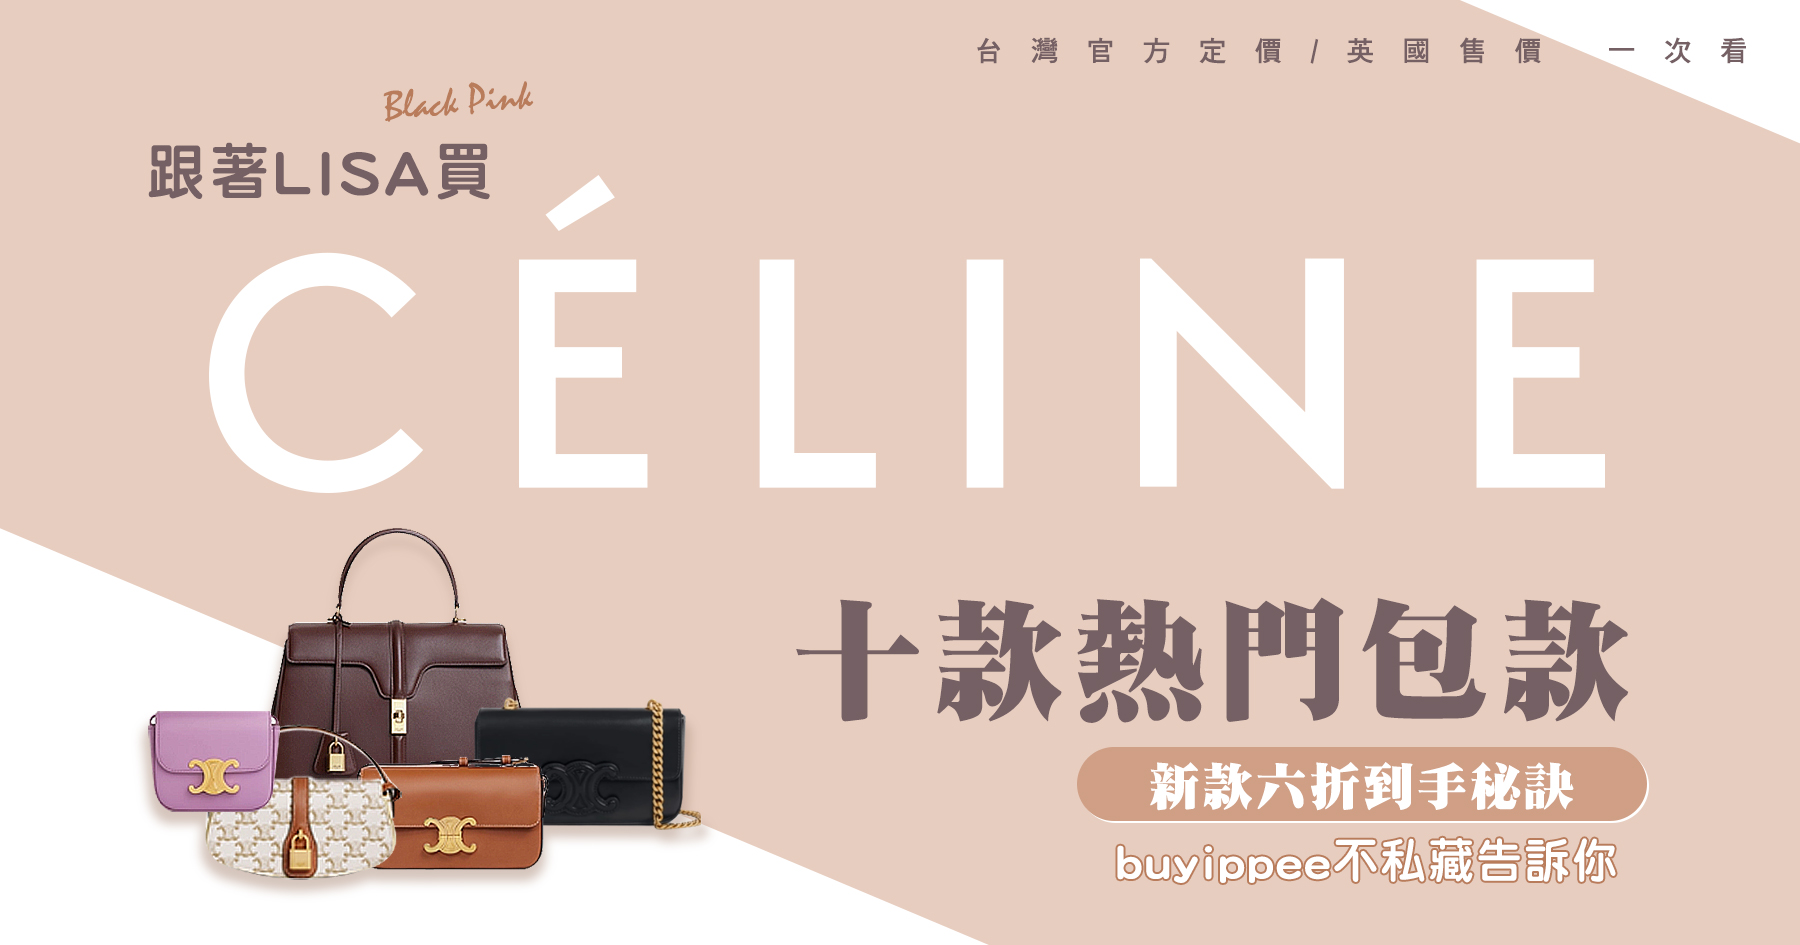 跟著LISA買Celine這十款熱門,台灣定價/英國售價一次看!新款六折到手秘訣都在這!